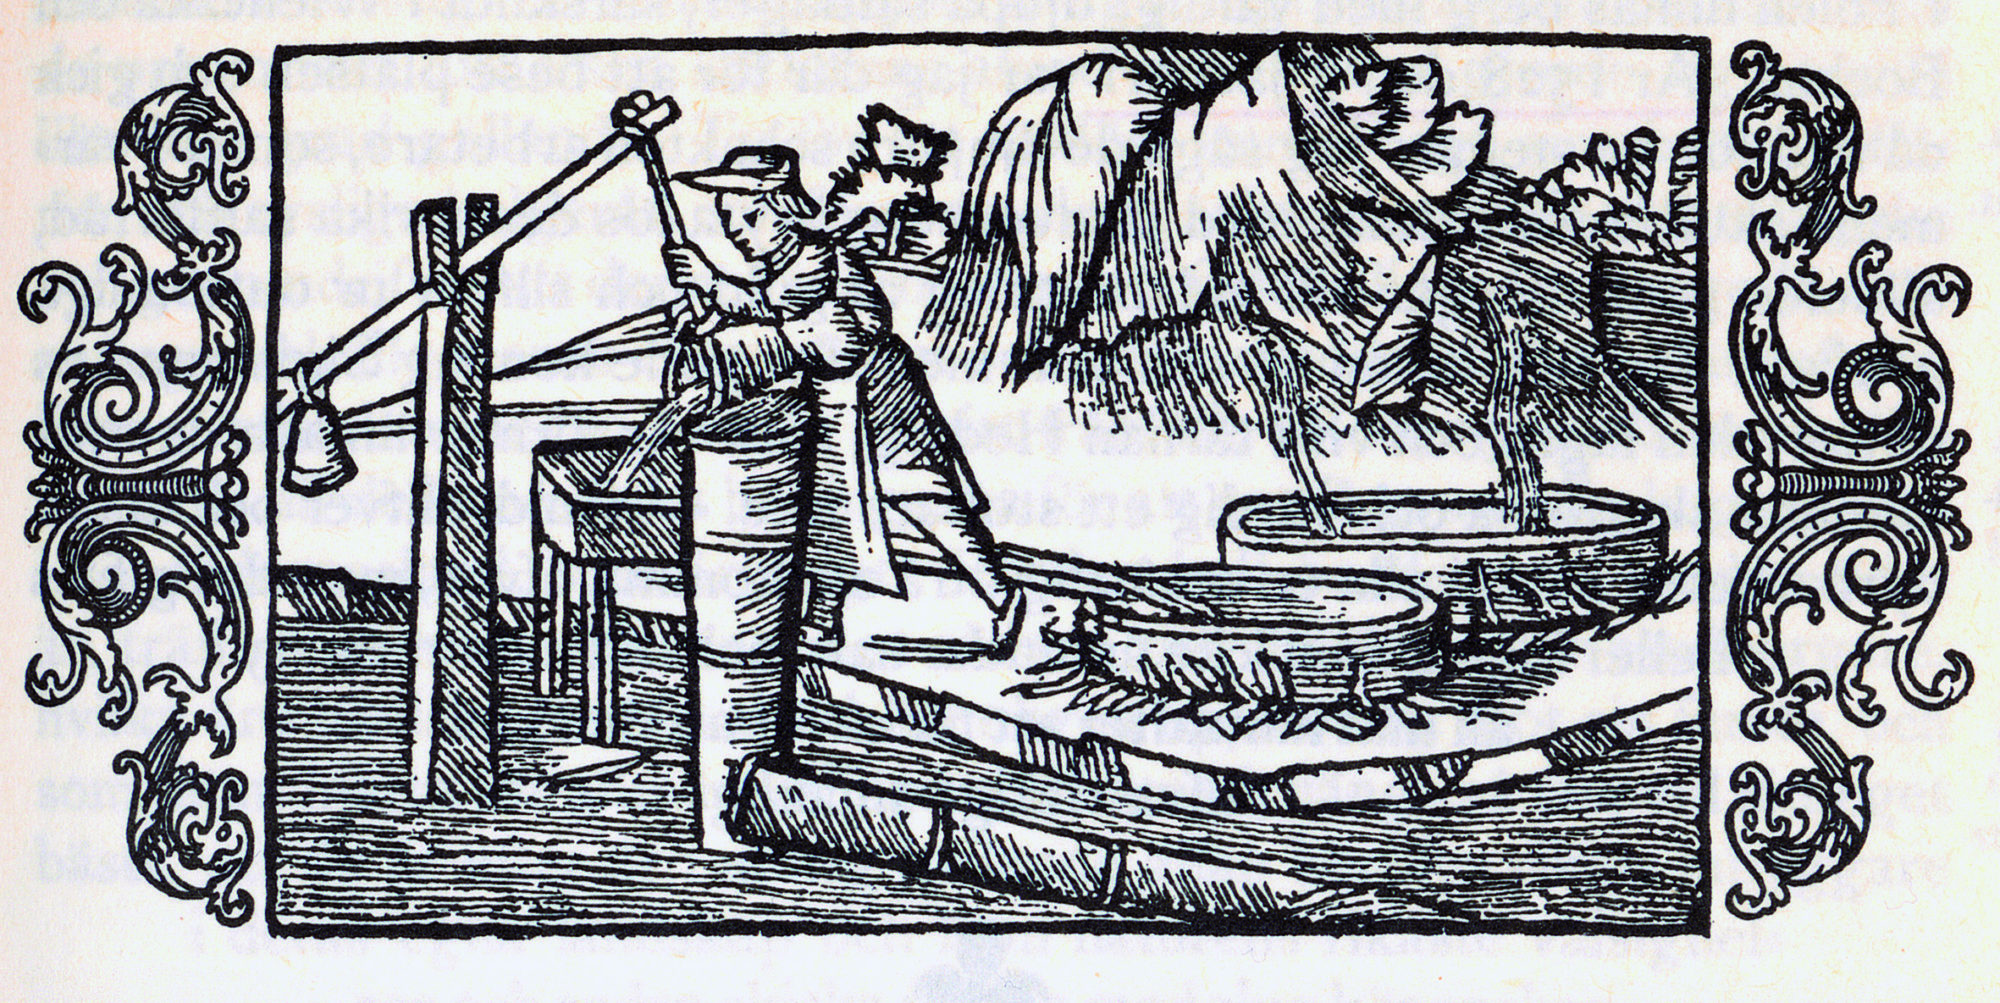 Salt sjøvann pumpes opp i saltkjelene, hvor vannet inndampes. Etter: Olaus Magnus, 1555: Historia de gentibus septentrionalibus / Historia om de nordiska folken